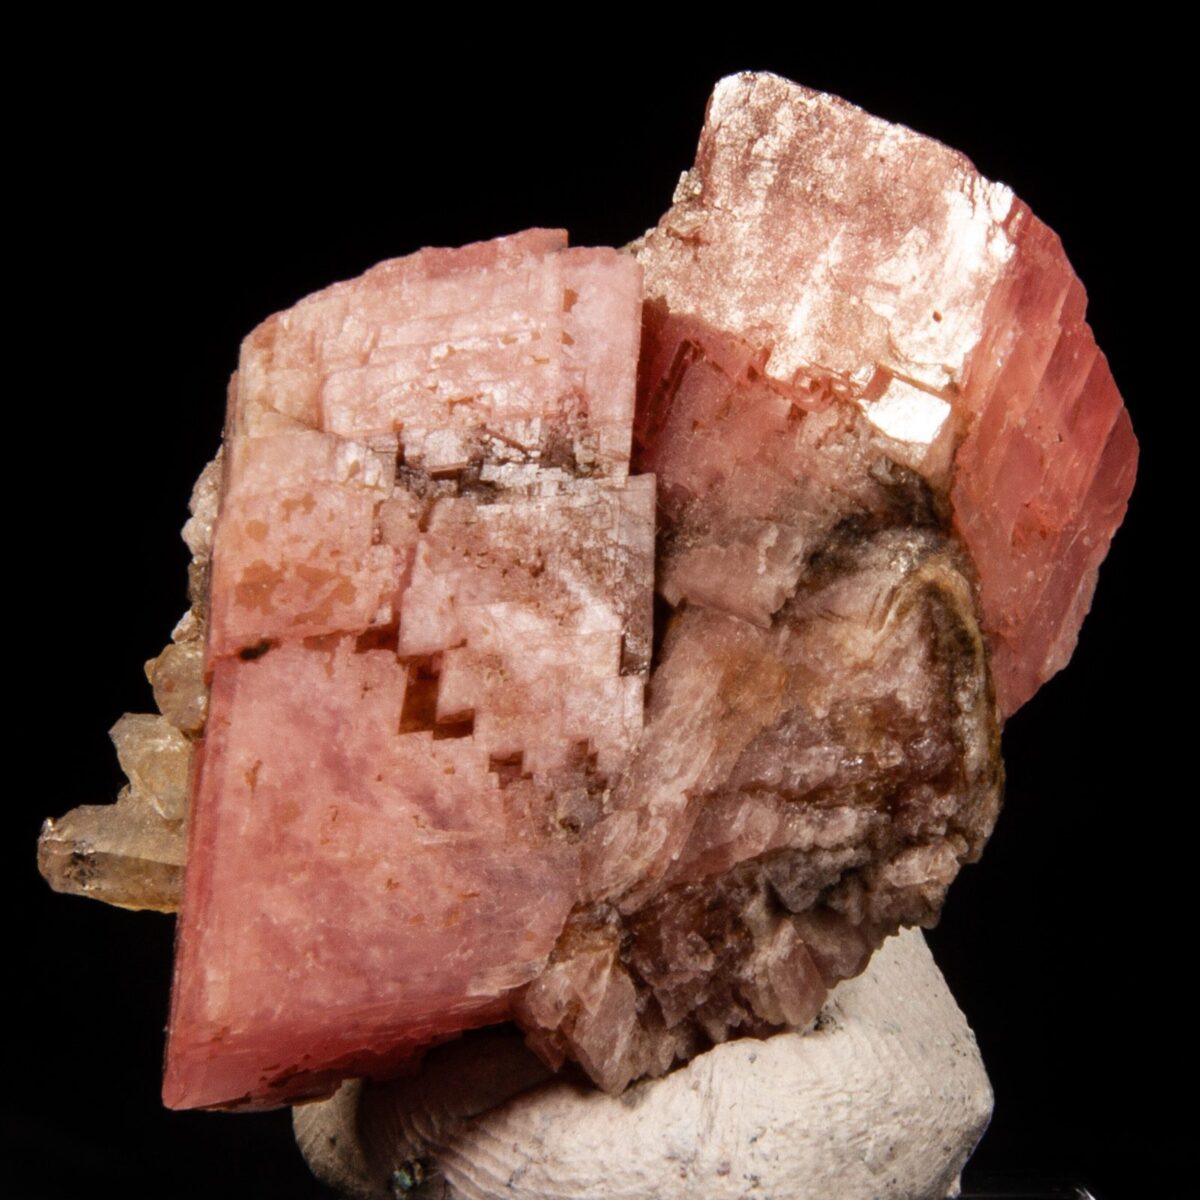 Rhodochrosite and quartz